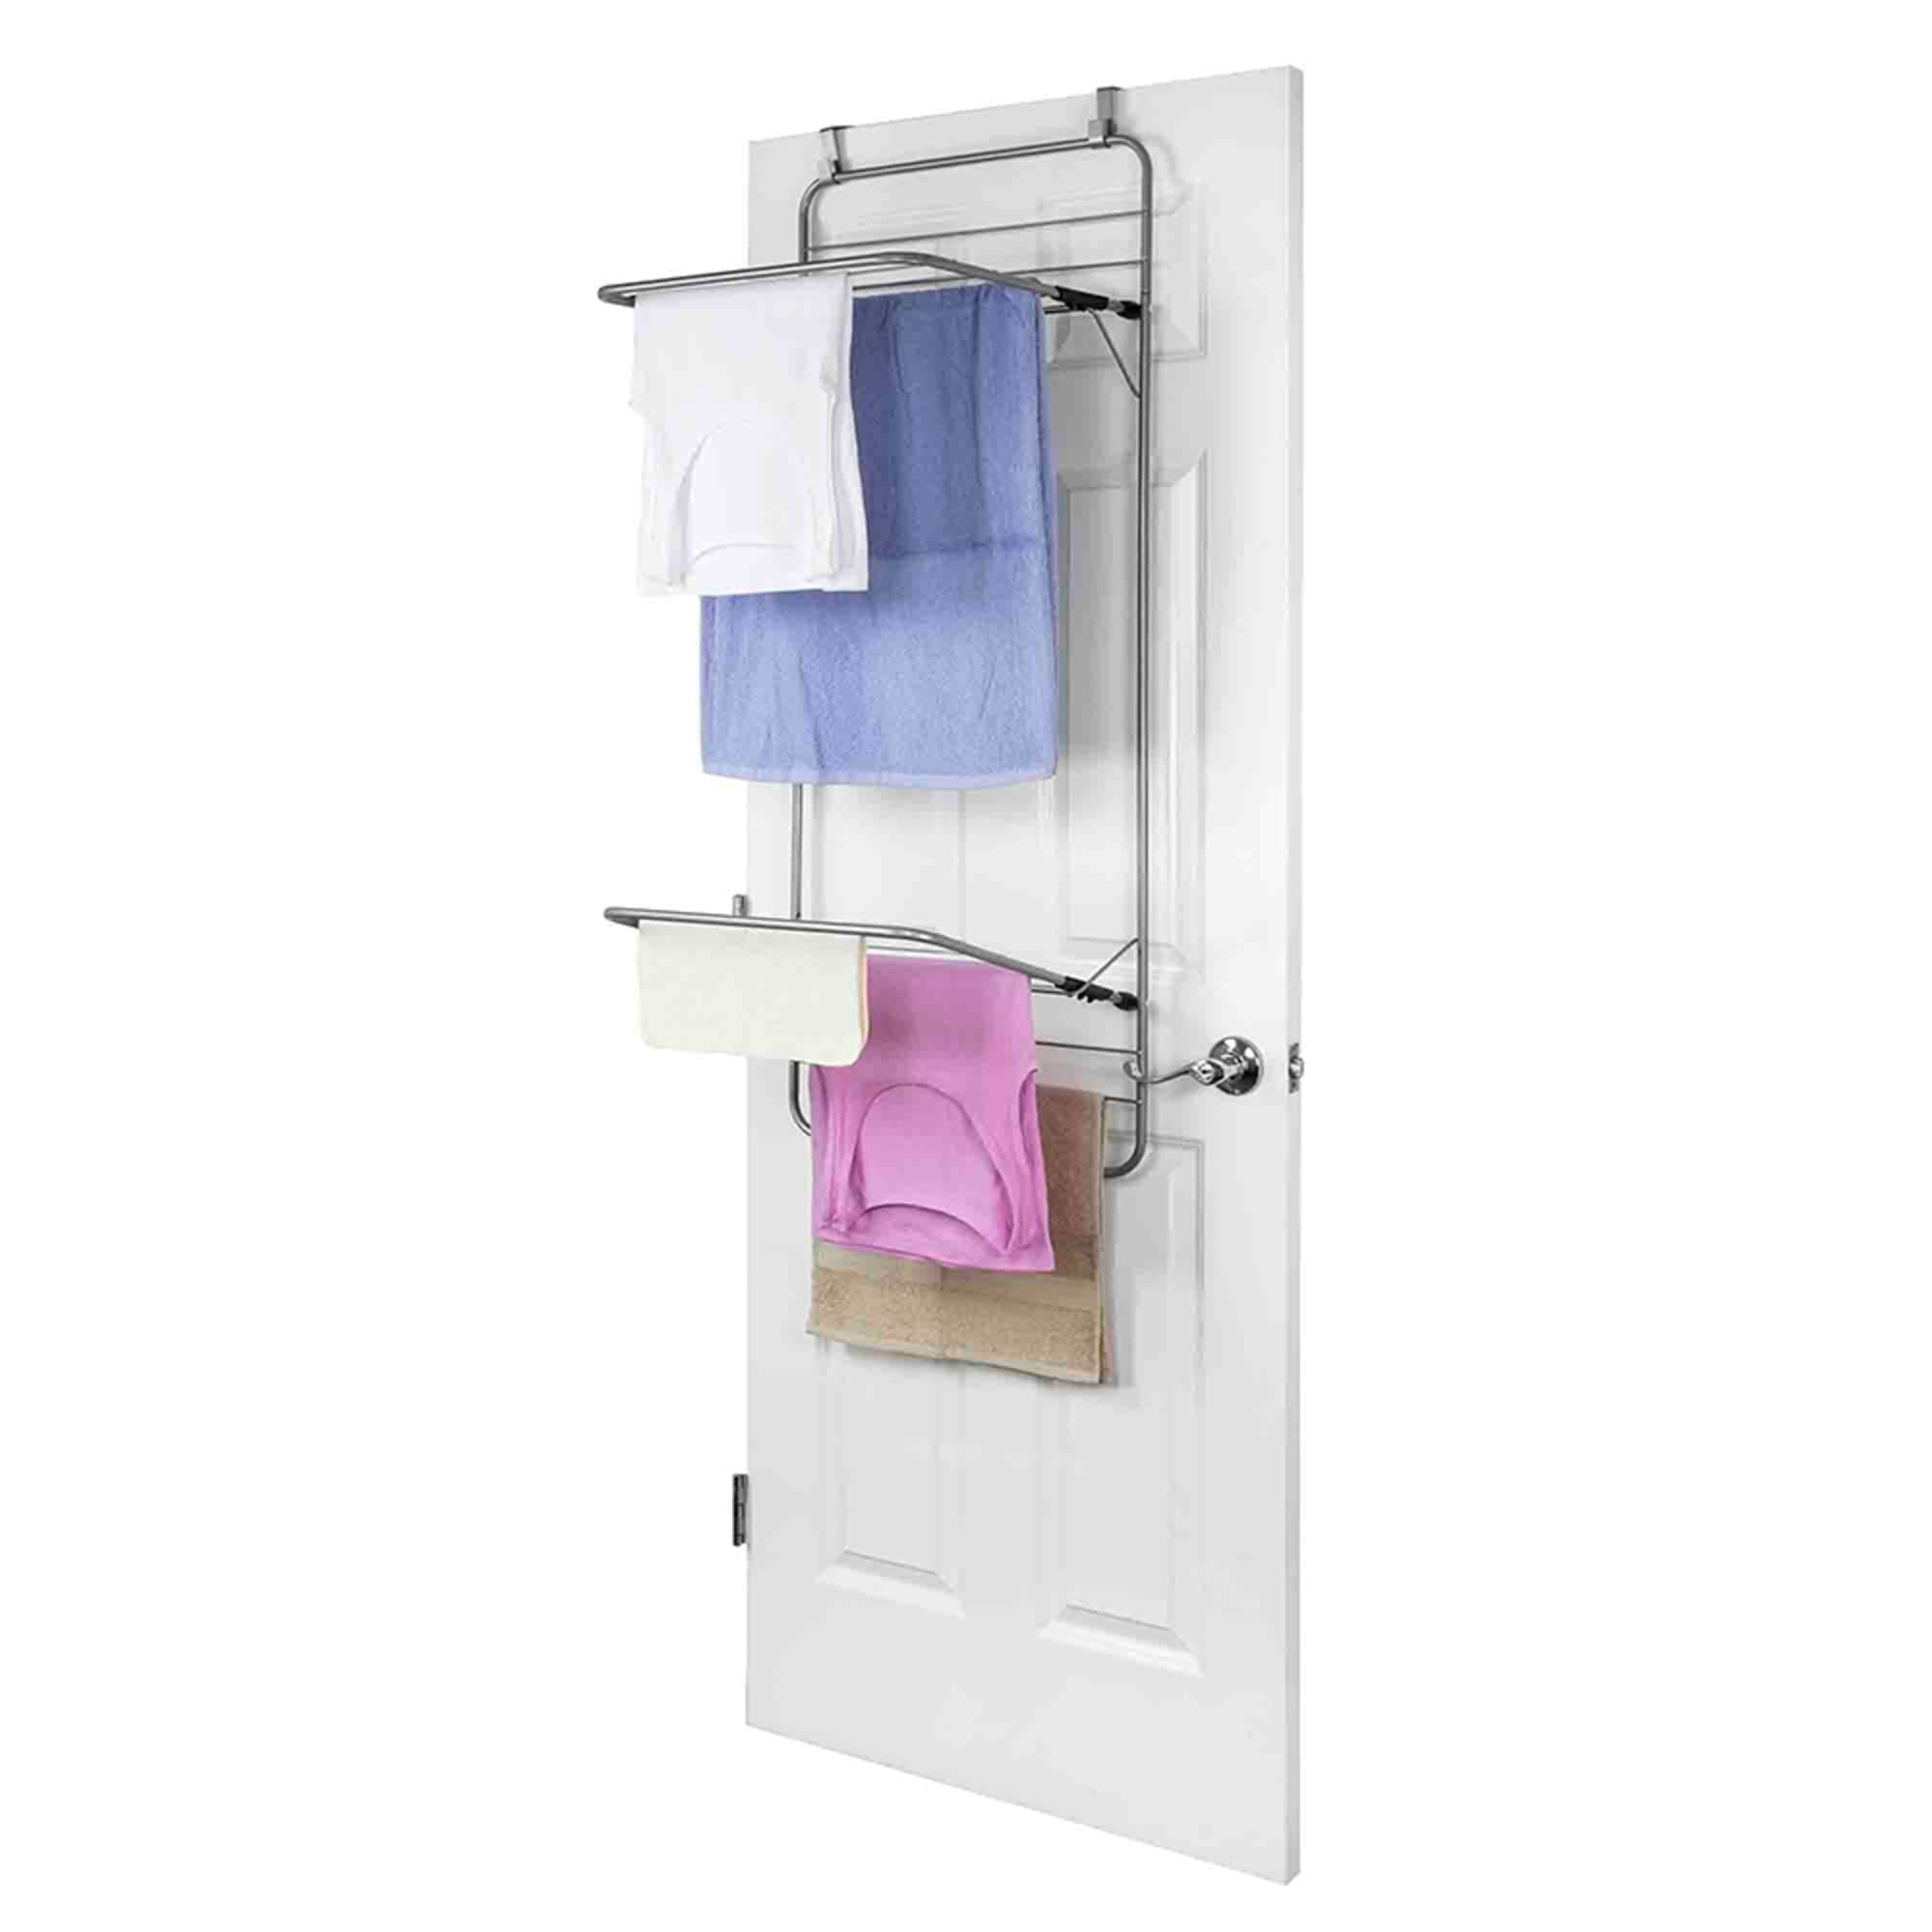 Steel Over the Door Towel Dryer Rack, Grey